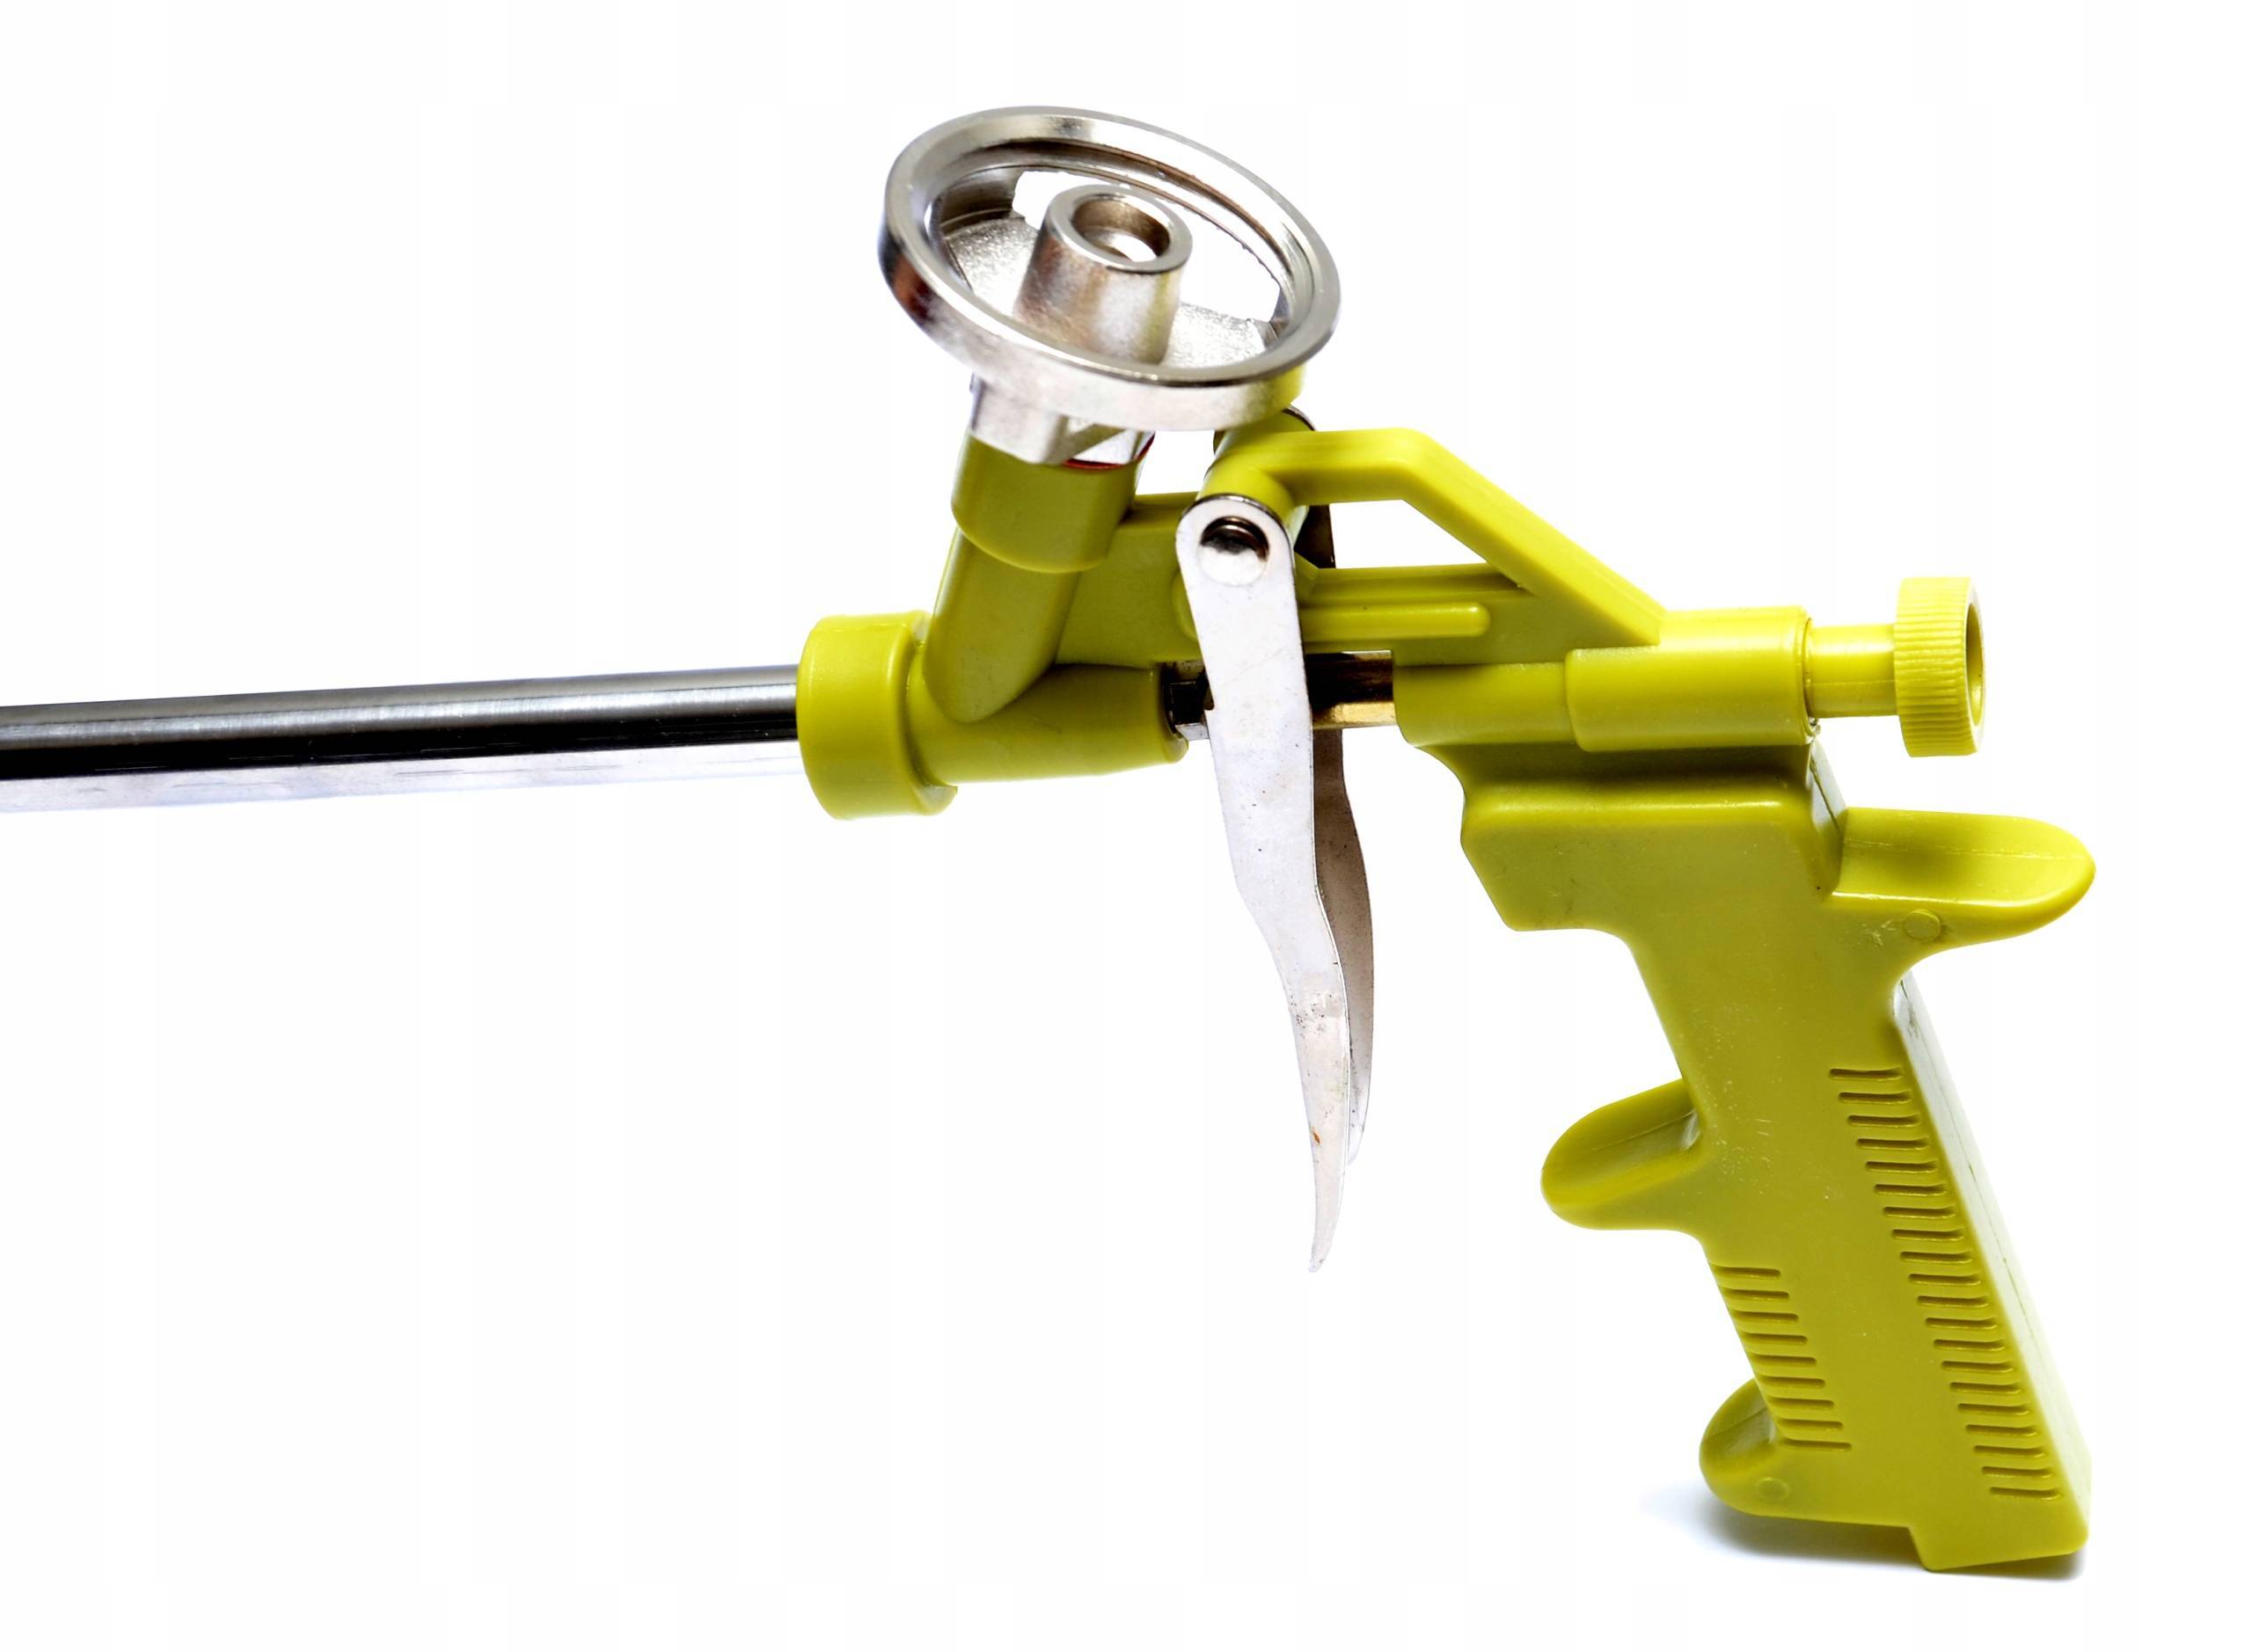 Пистолет для монтажной пены – для чего используется, устройство, принцип работы, существующие преимущества